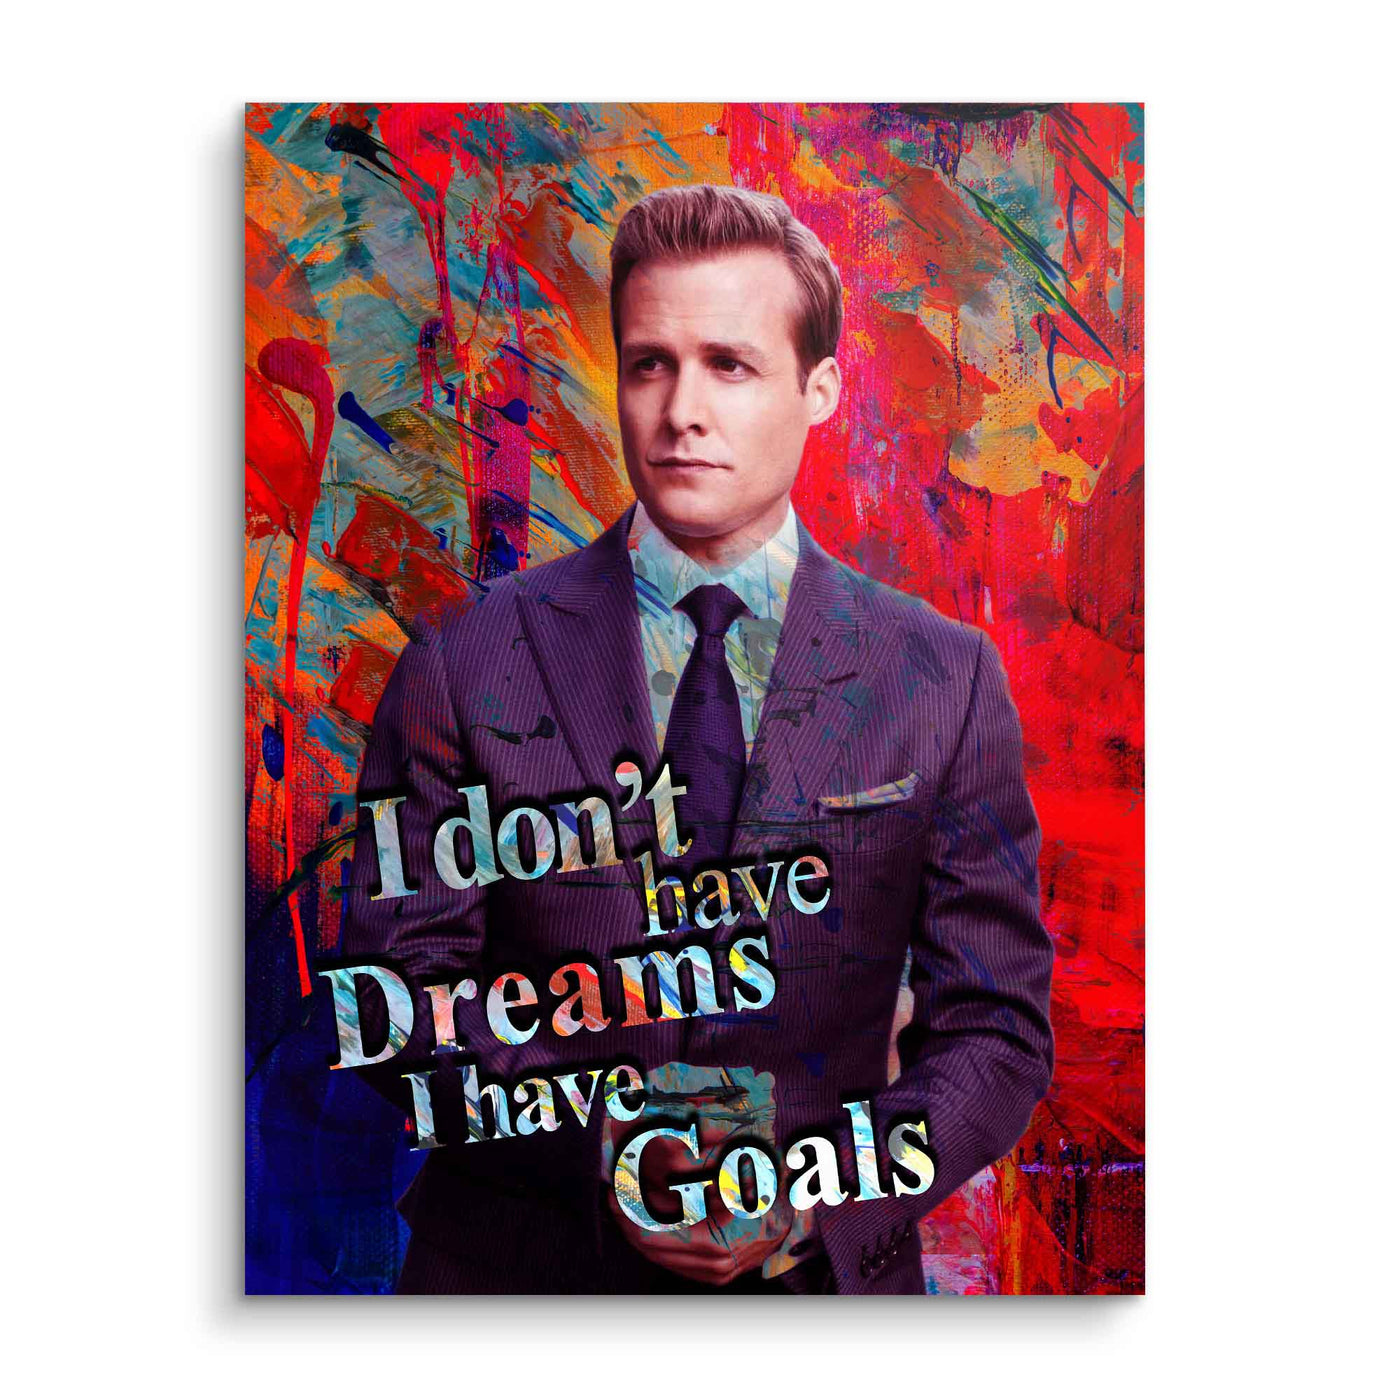 I have Goals